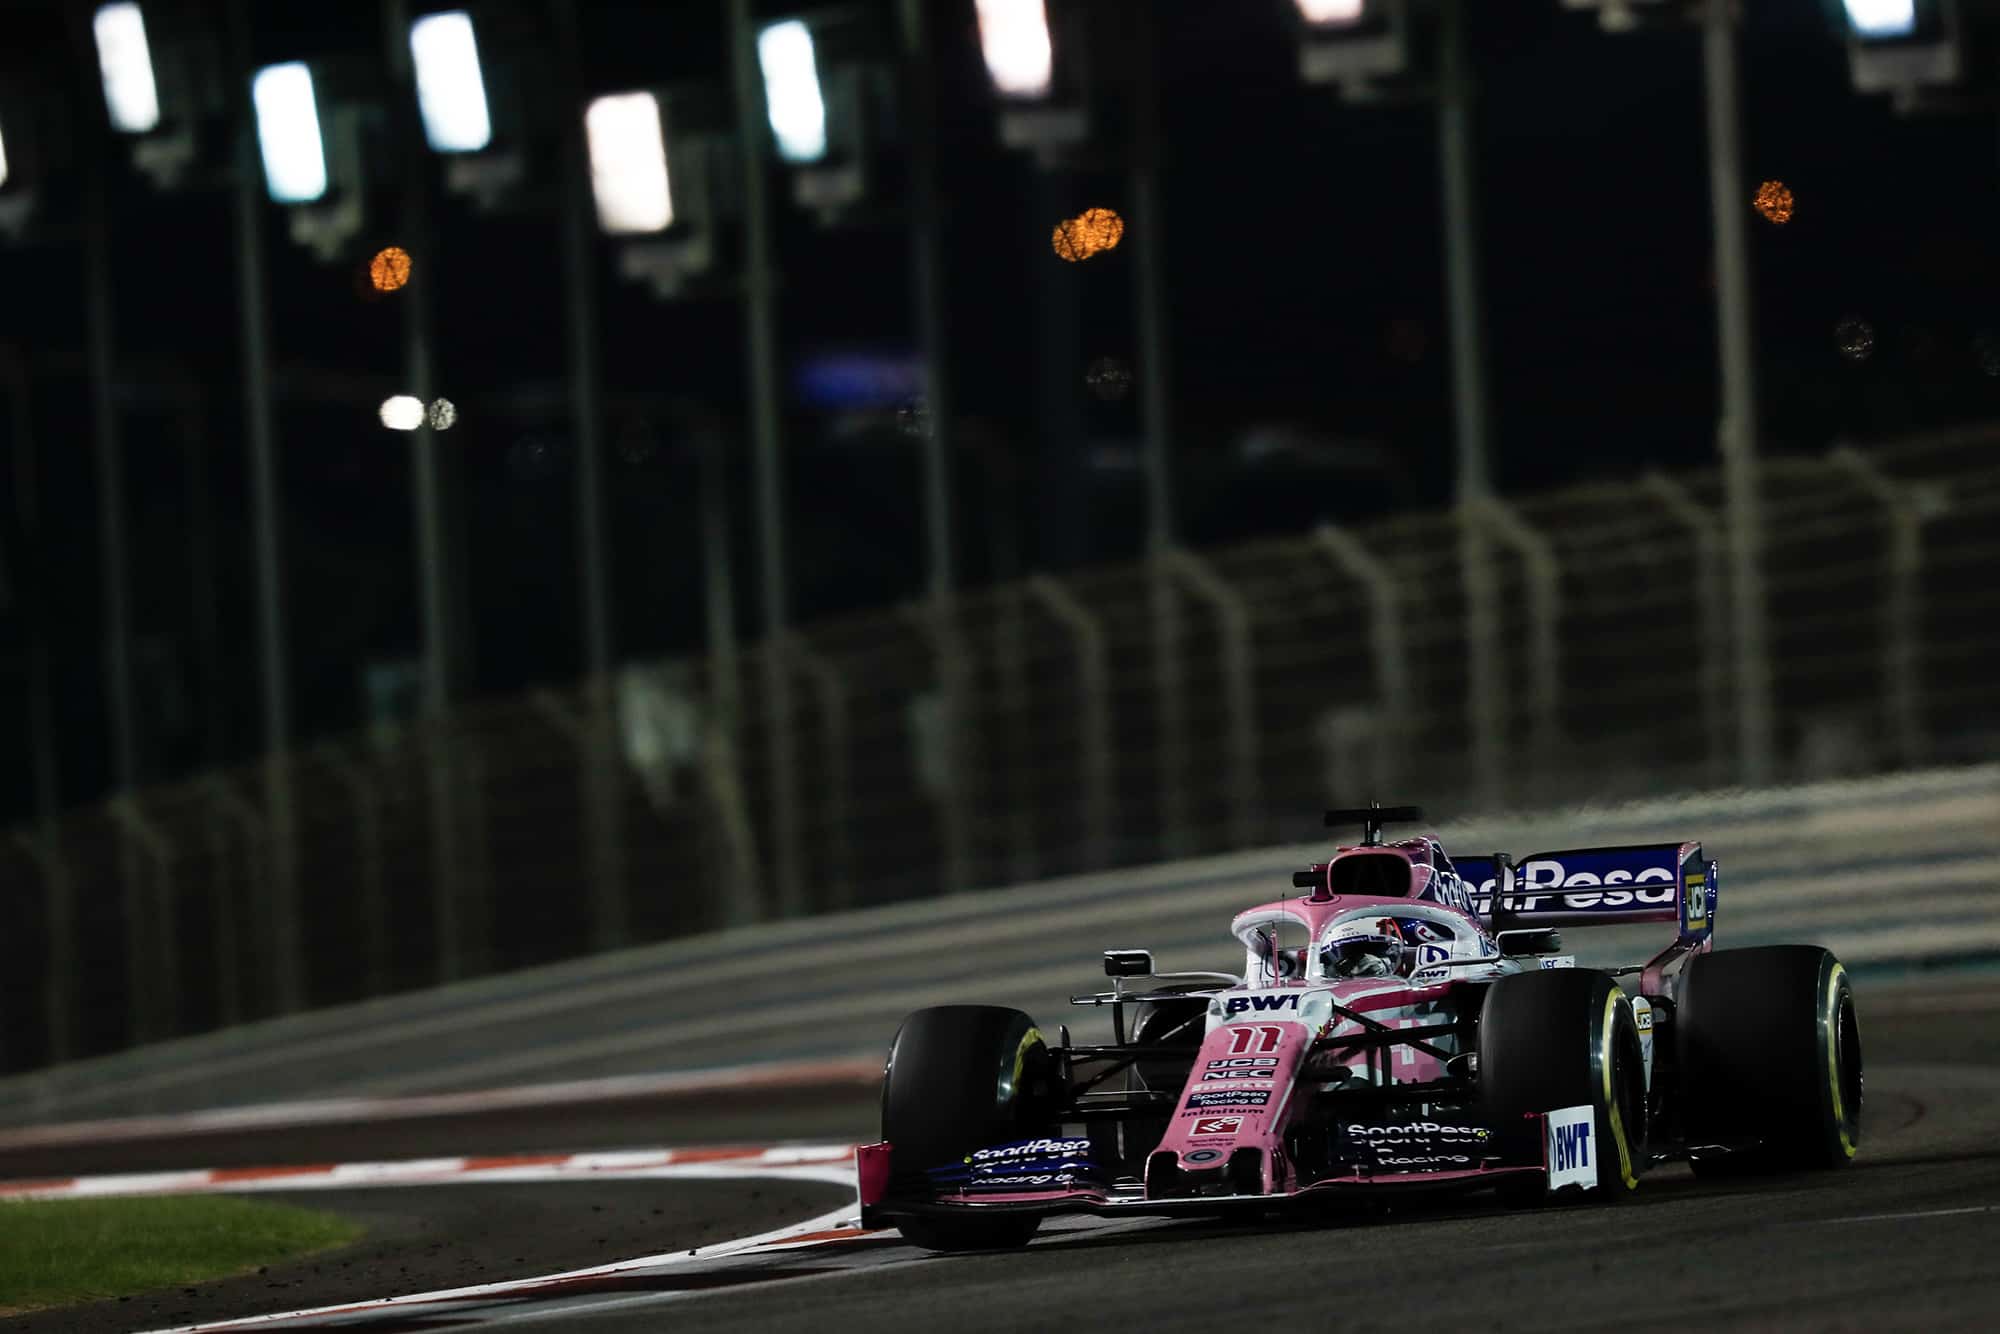 Sergio Perez's Racing Point